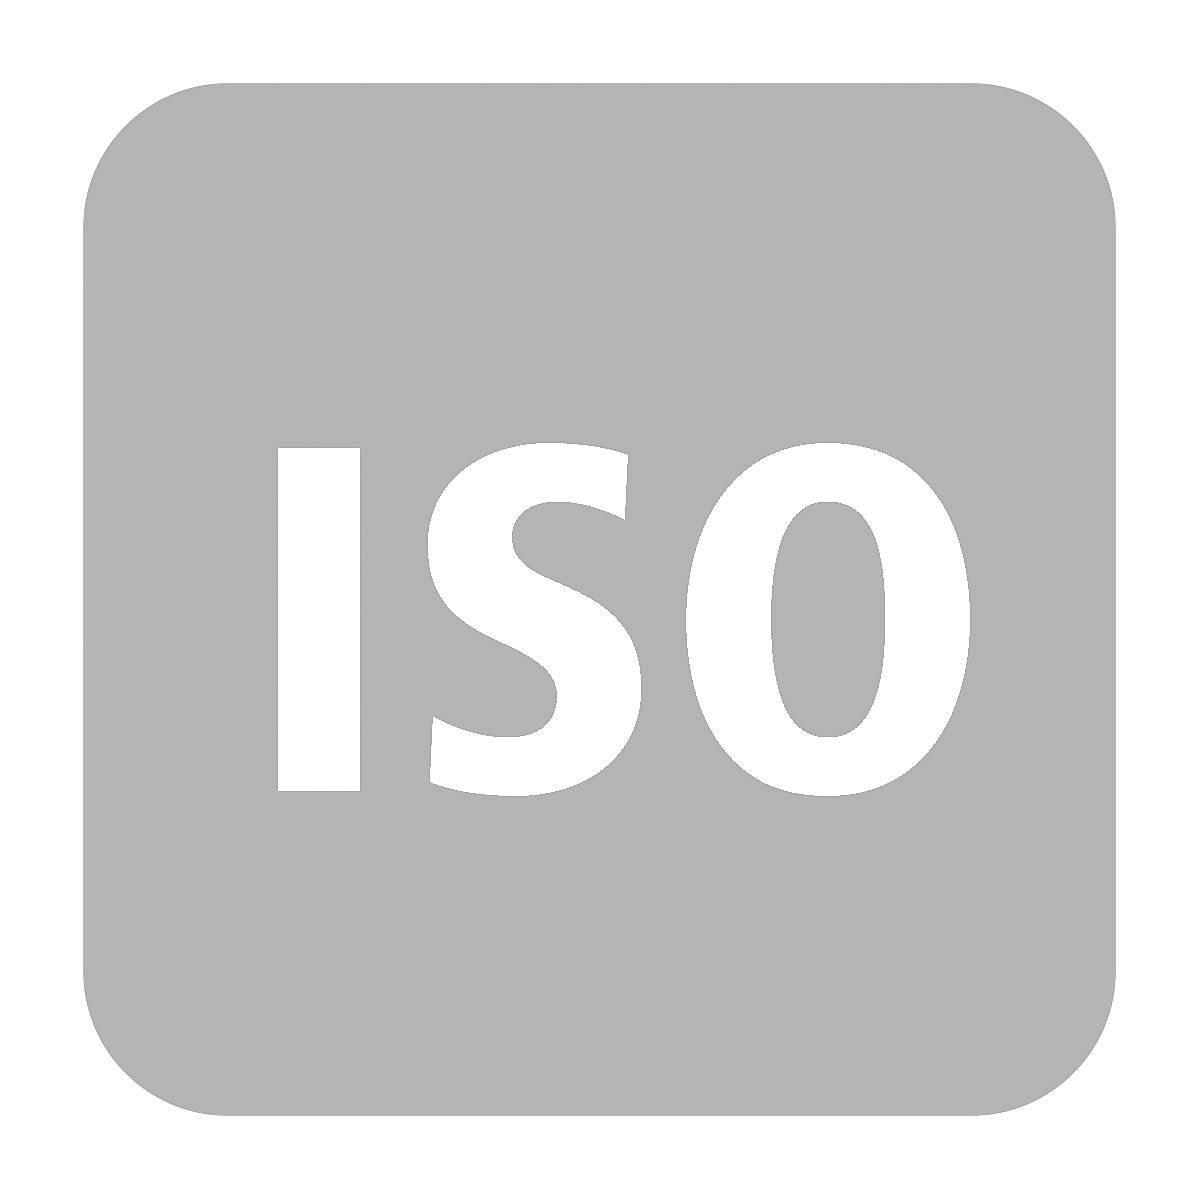 Nadoplata za ISO izvedbu